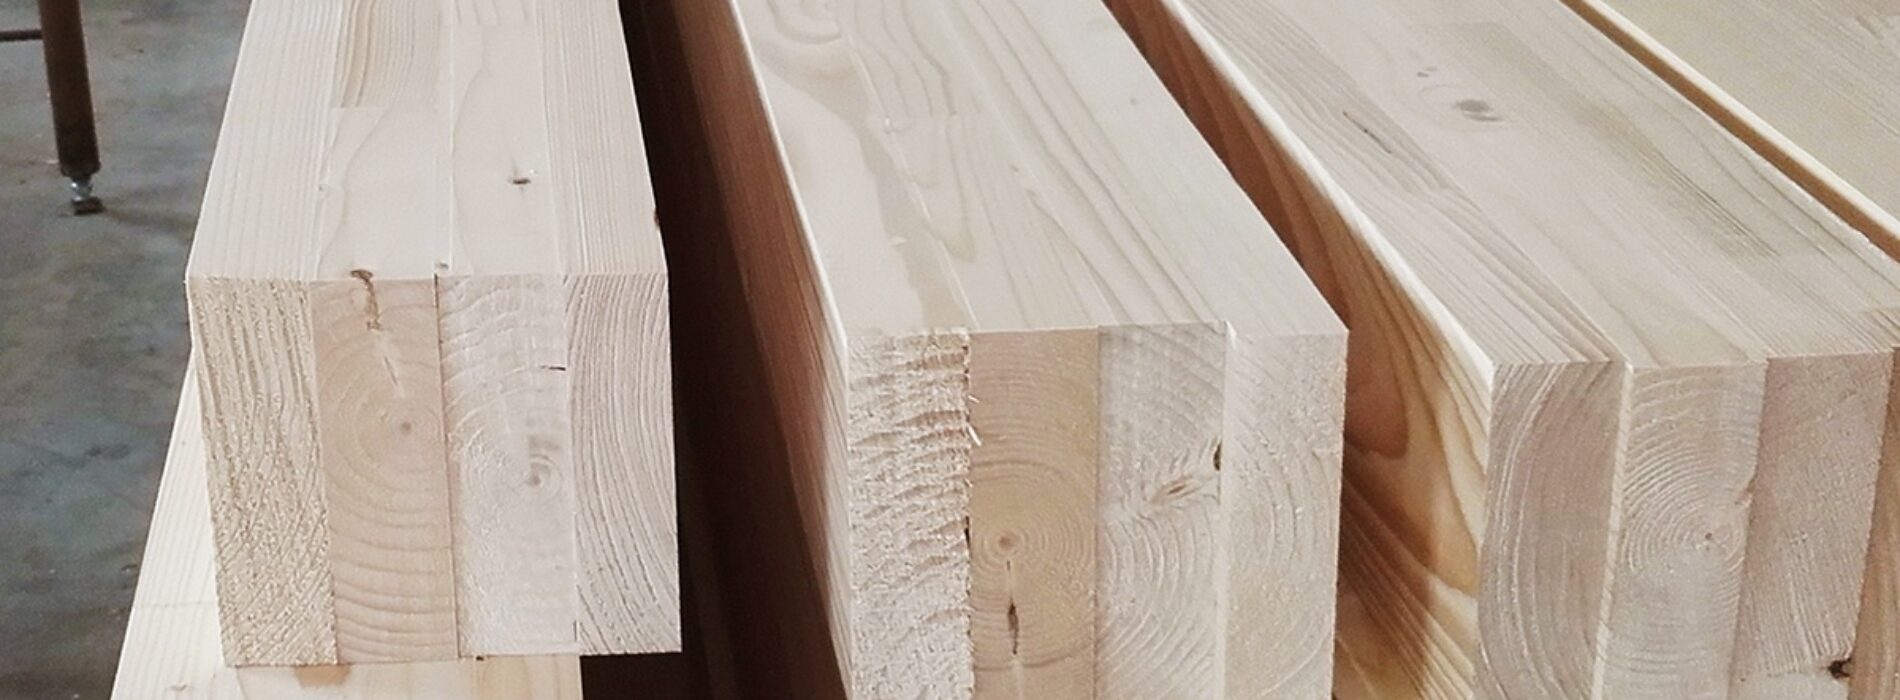 Drewno klejone BSH – zastosowanie, korzyści, parametry techniczne